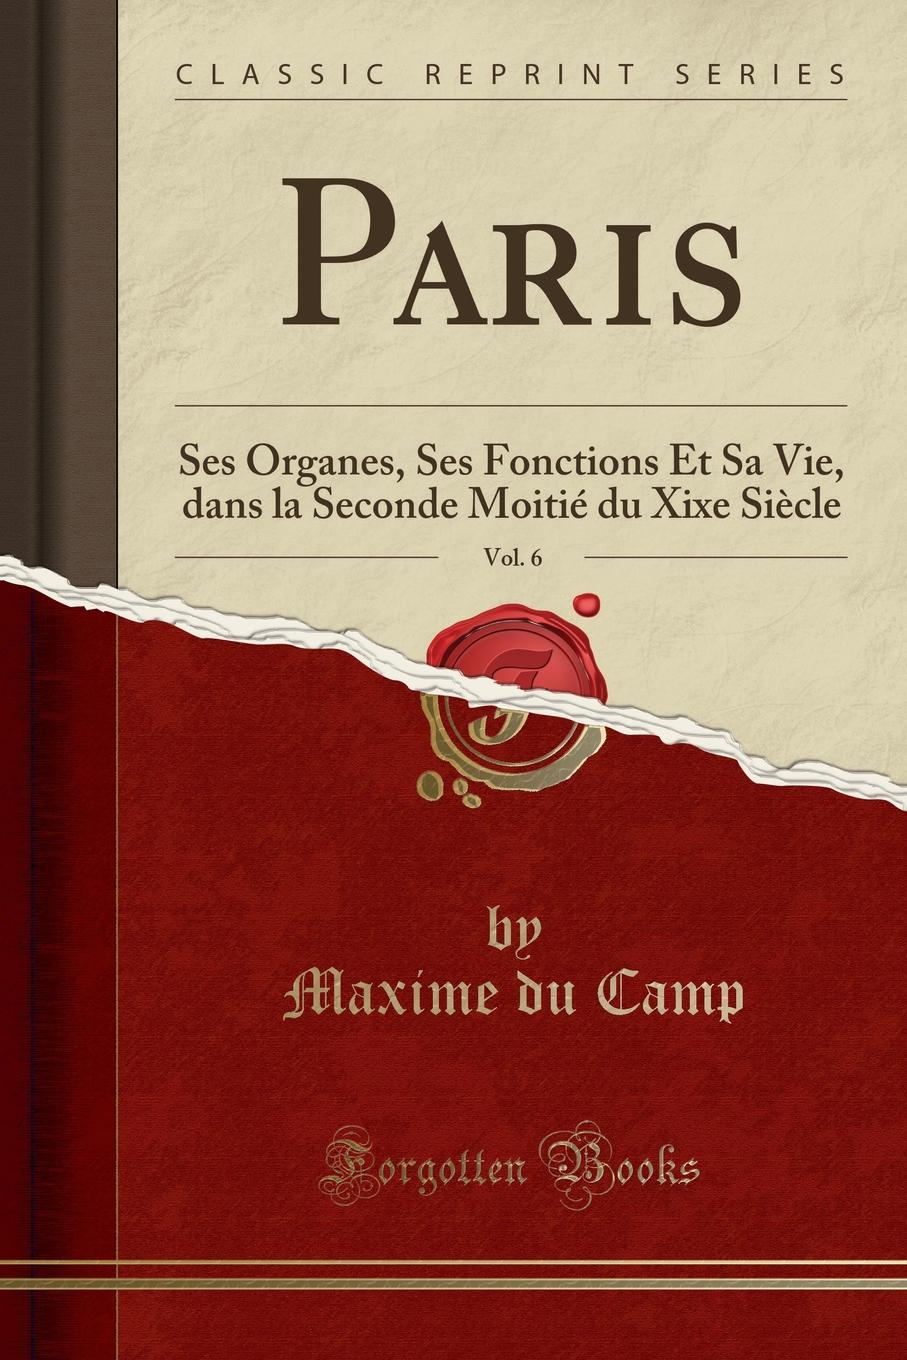 Paris, Vol. 6. Ses Organes, Ses Fonctions Et Sa Vie, dans la Seconde Moitie du Xixe Siecle (Classic Reprint)